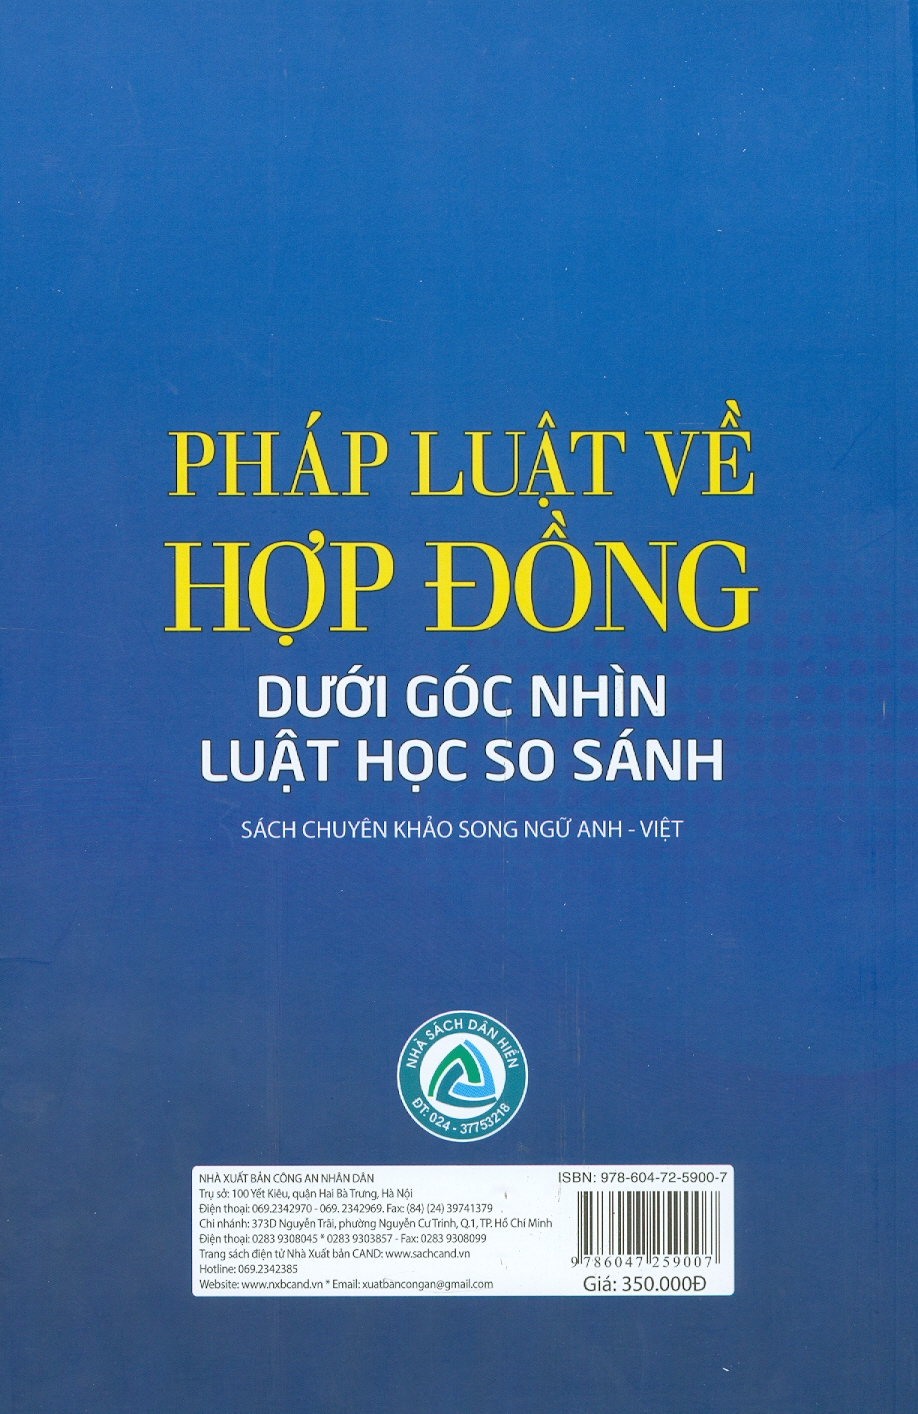 Pháp Luật Về Hợp Đồng Dưới Góc Nhìn Luật Học So Sánh (Sách chuyên khảo song ngữ Anh - Việt)